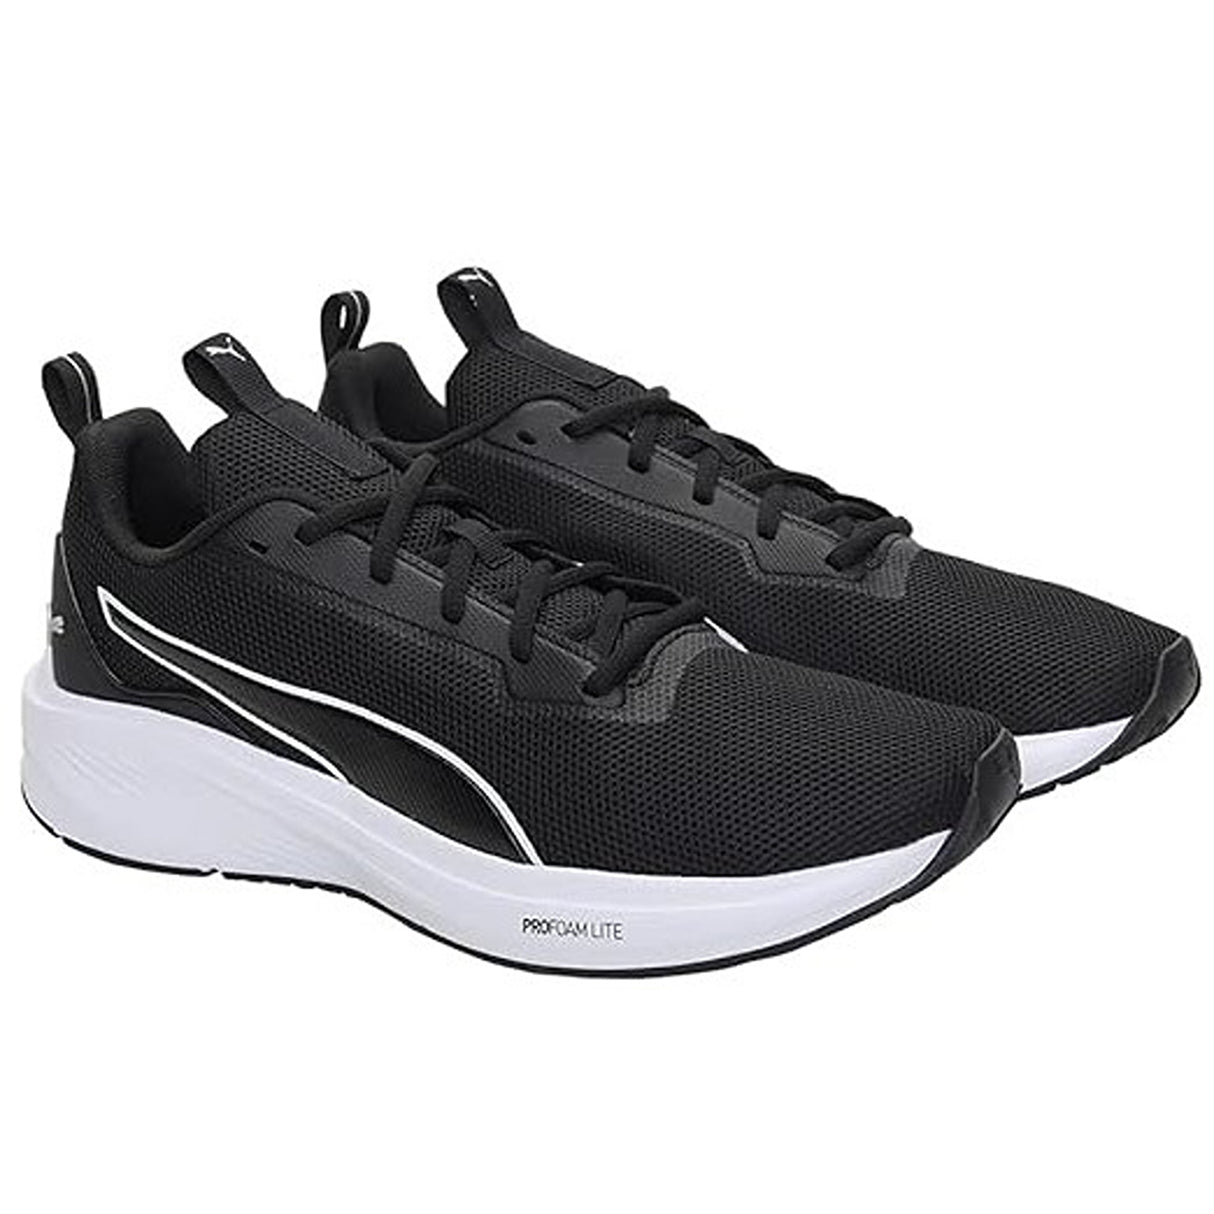 Puma Unisex-Adult Fire Runner Profoam Running Shoe (37718201)